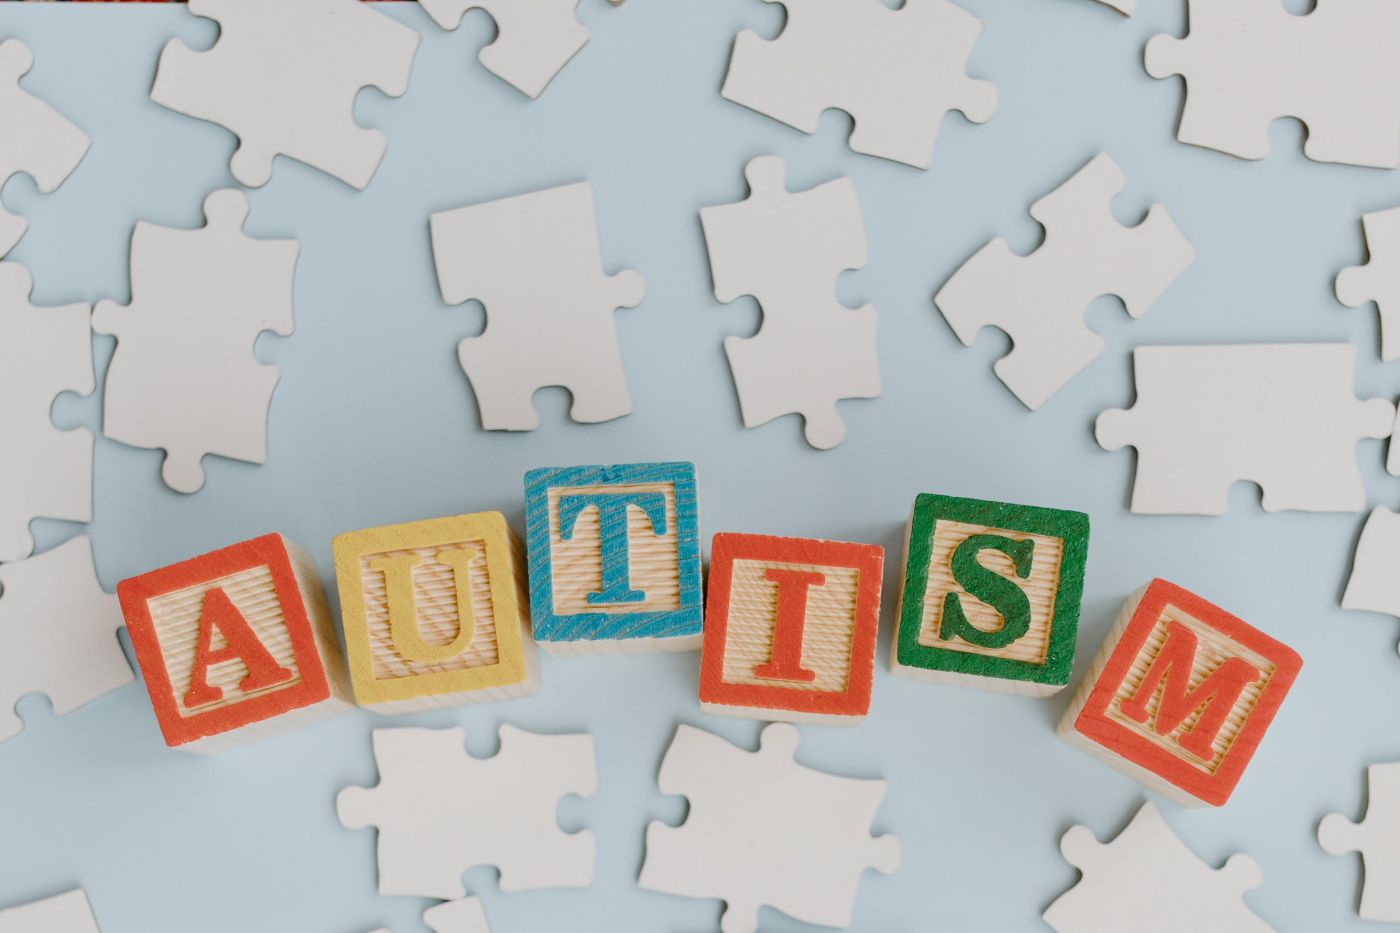 Rozsypane puzzle oraz kostki ułożone w słowo "Autism".